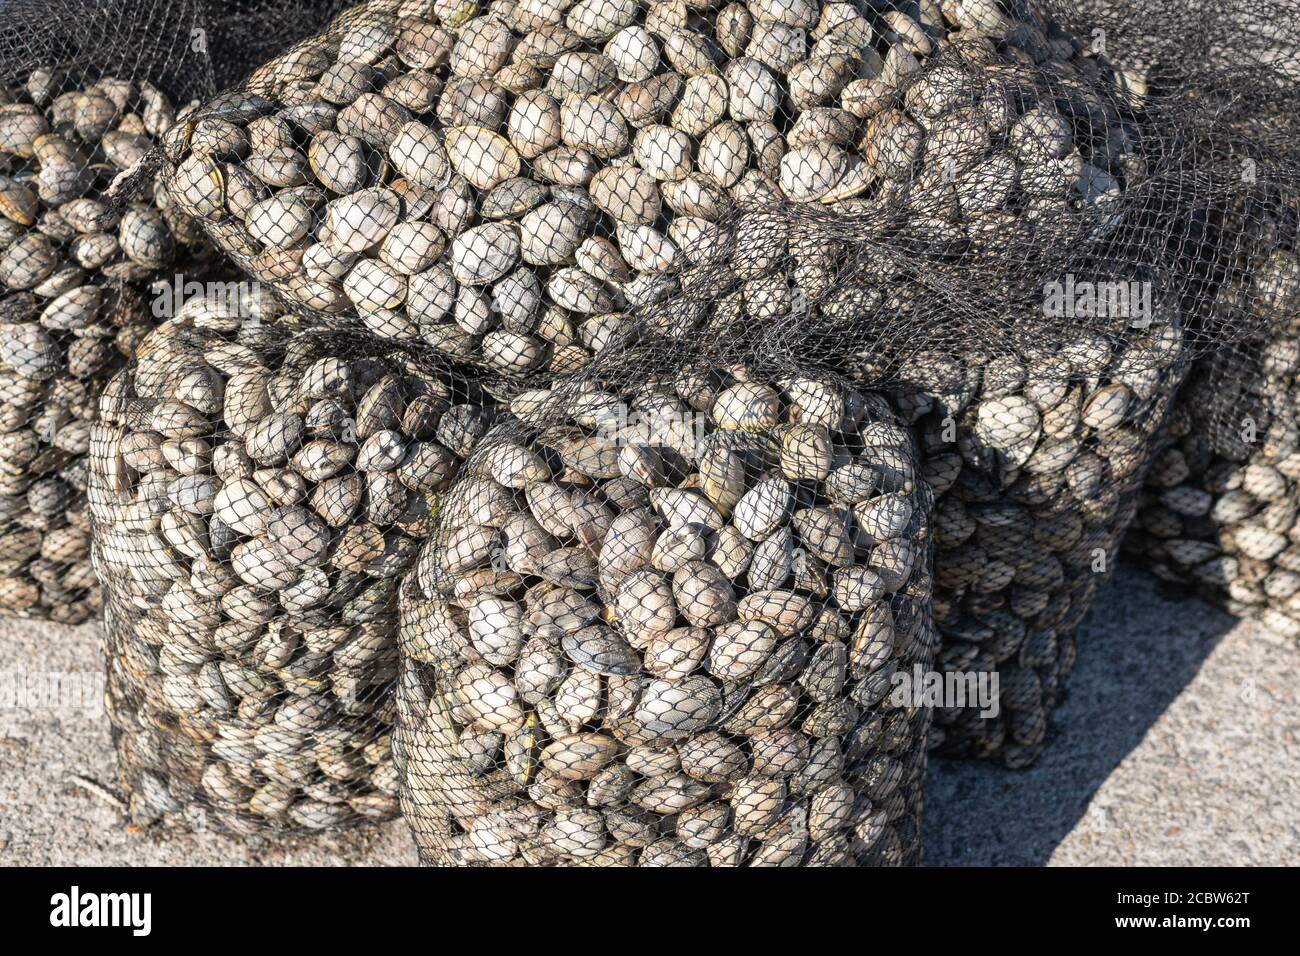 Grupo de bolsa de malla de almeja fresca. Mariscos de Galicia, España Foto de stock